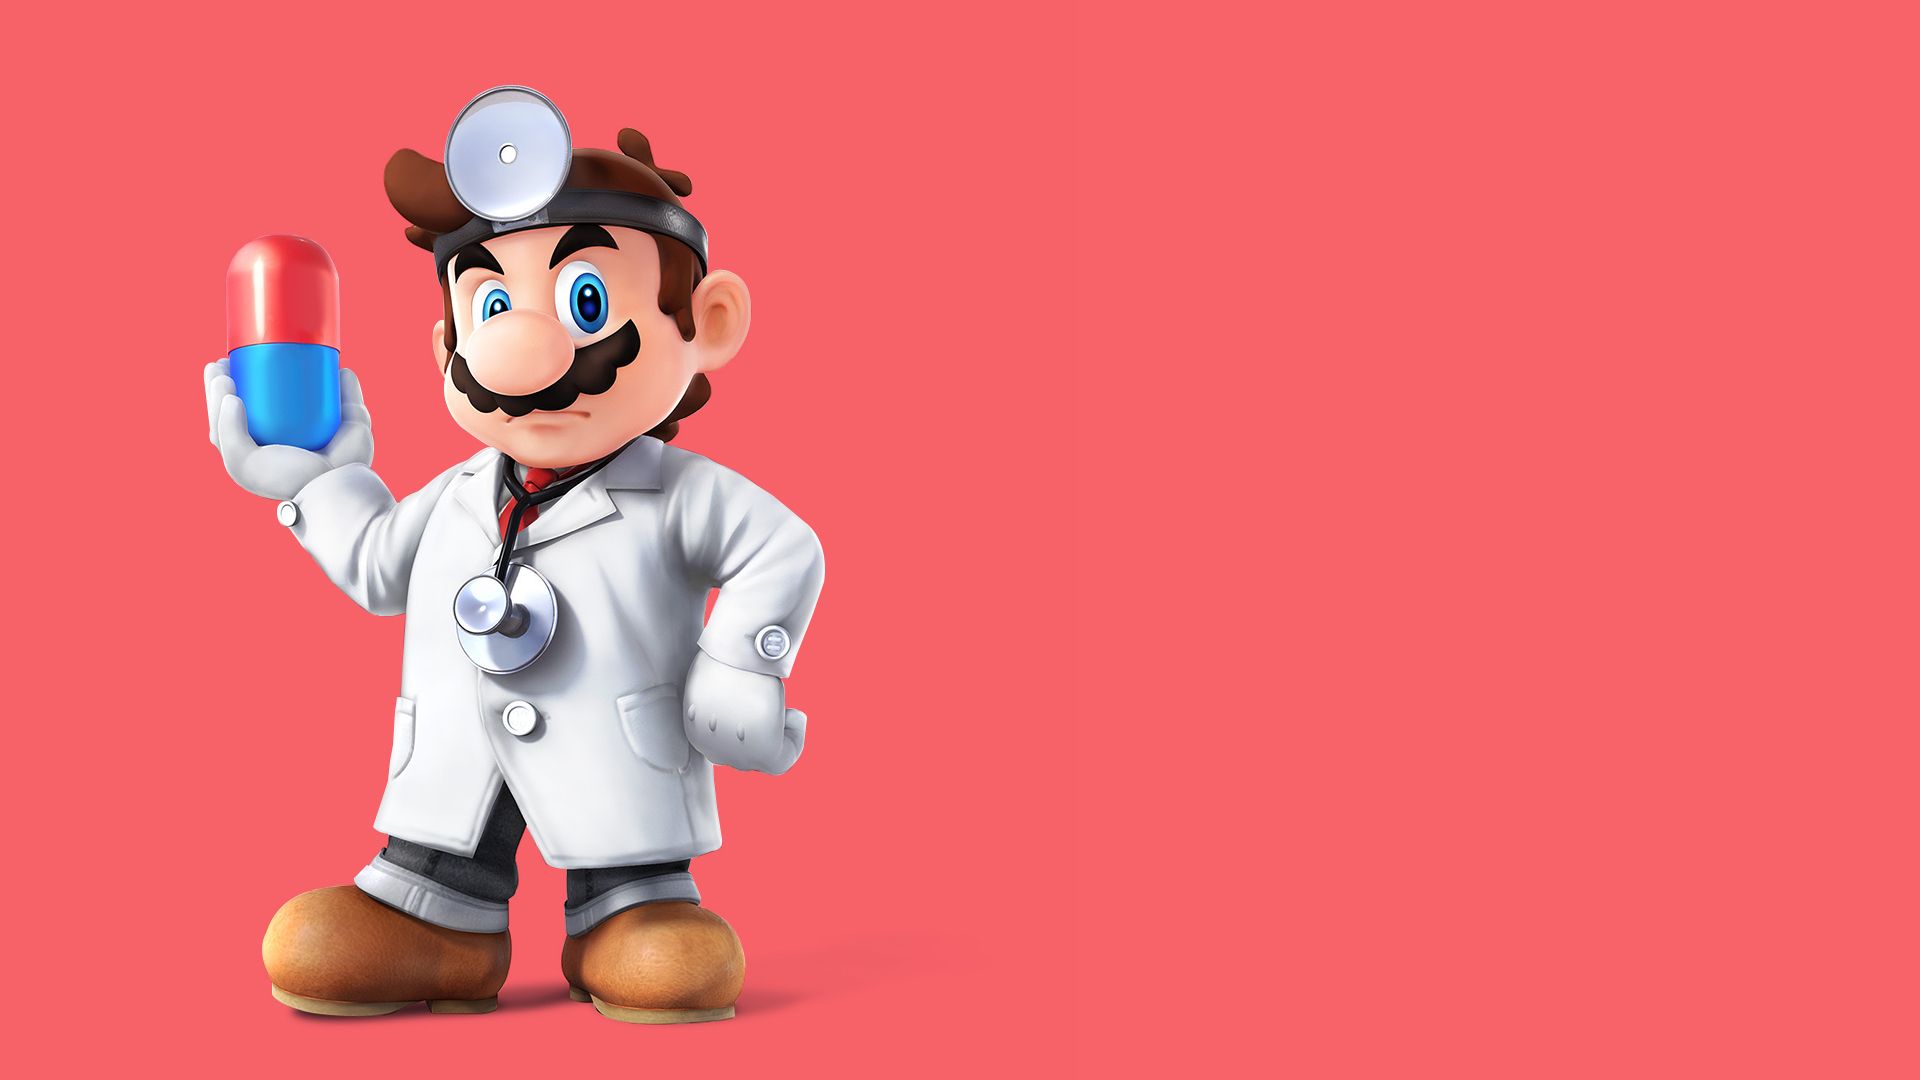 Dr. Mario Wallpaper. Mario Wallpaper, Mario iPhone Wallpaper and Funny Mario Wallpaper